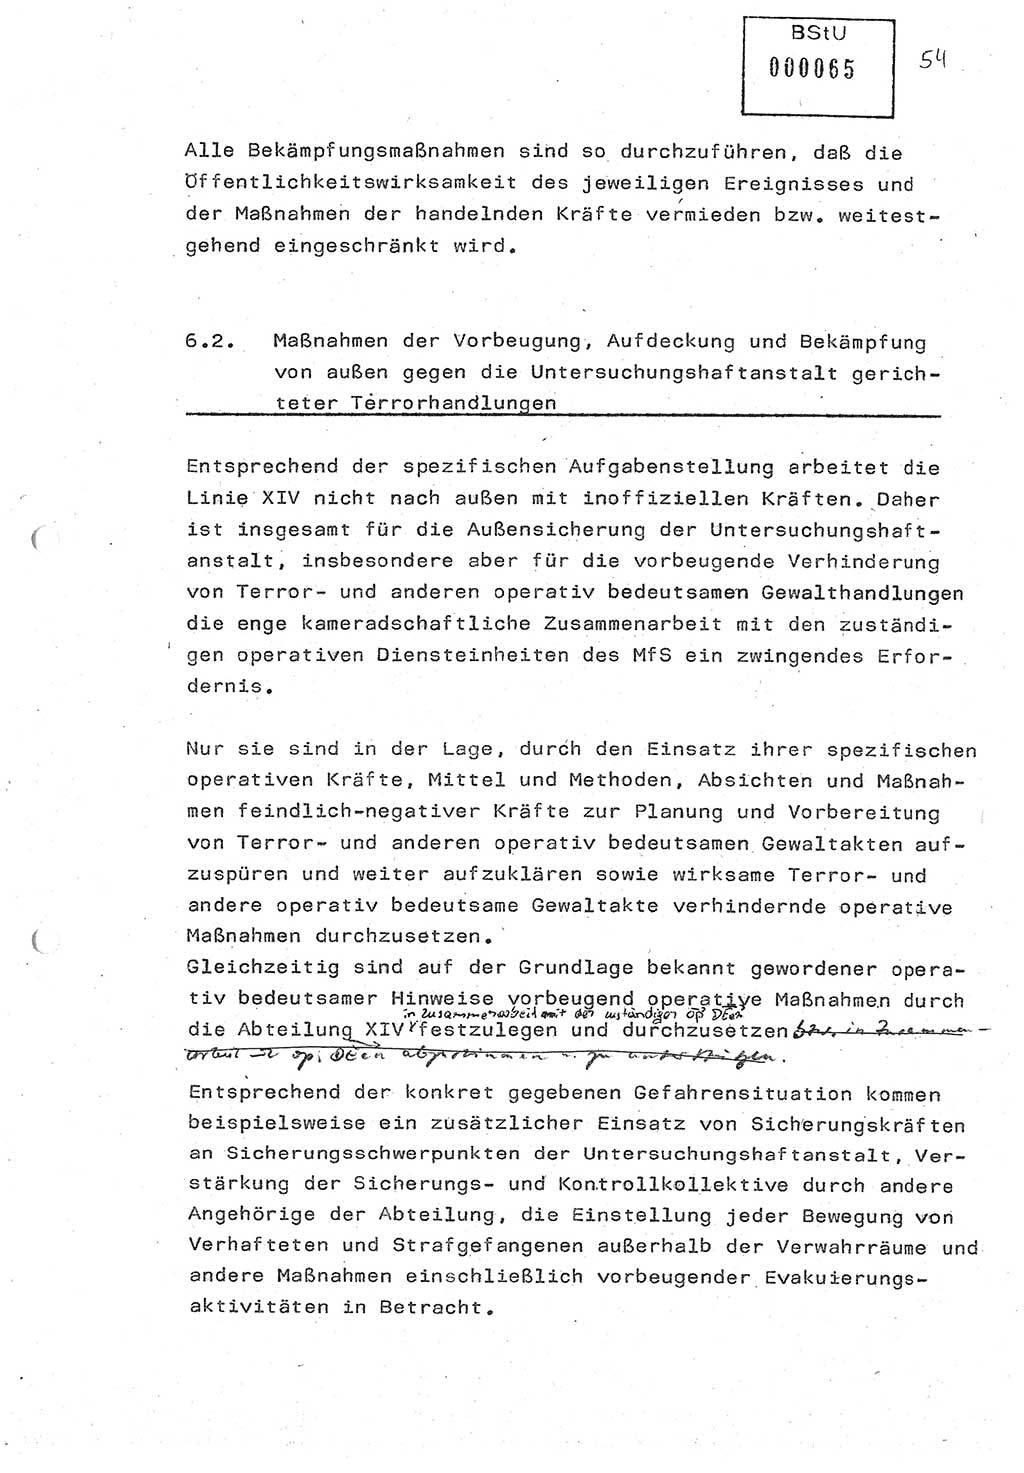 Diplomarbeit (Entwurf) Oberleutnant Peter Parke (Abt. ⅩⅣ), Ministerium für Staatssicherheit (MfS) [Deutsche Demokratische Republik (DDR)], Juristische Hochschule (JHS), Geheime Verschlußsache (GVS) o001-98/86, Potsdam 1986, Seite 65 (Dipl.-Arb. MfS DDR JHS GVS o001-98/86 1986, S. 65)